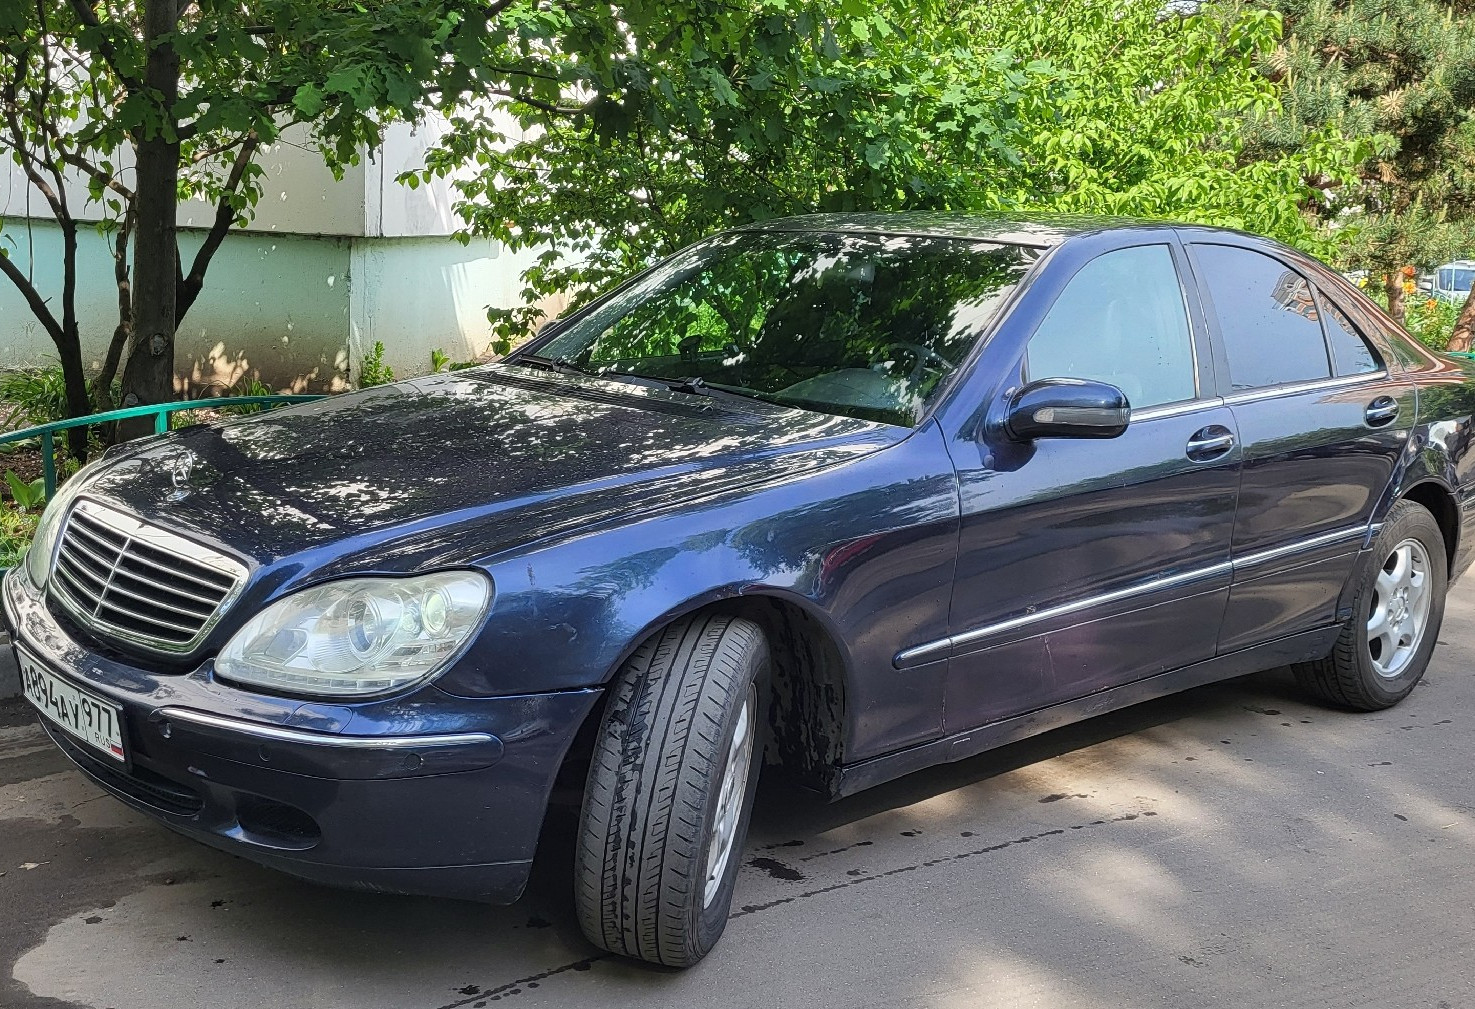 Аренда mercedes-benz s-klass эконом класса 2001 года в городе Москва Люблино от 2640 руб./сутки, задний привод, двигатель: бензин, объем 3.2 литра, ОСАГО (Мультидрайв), без водителя, недорого, вид 2 - RentRide